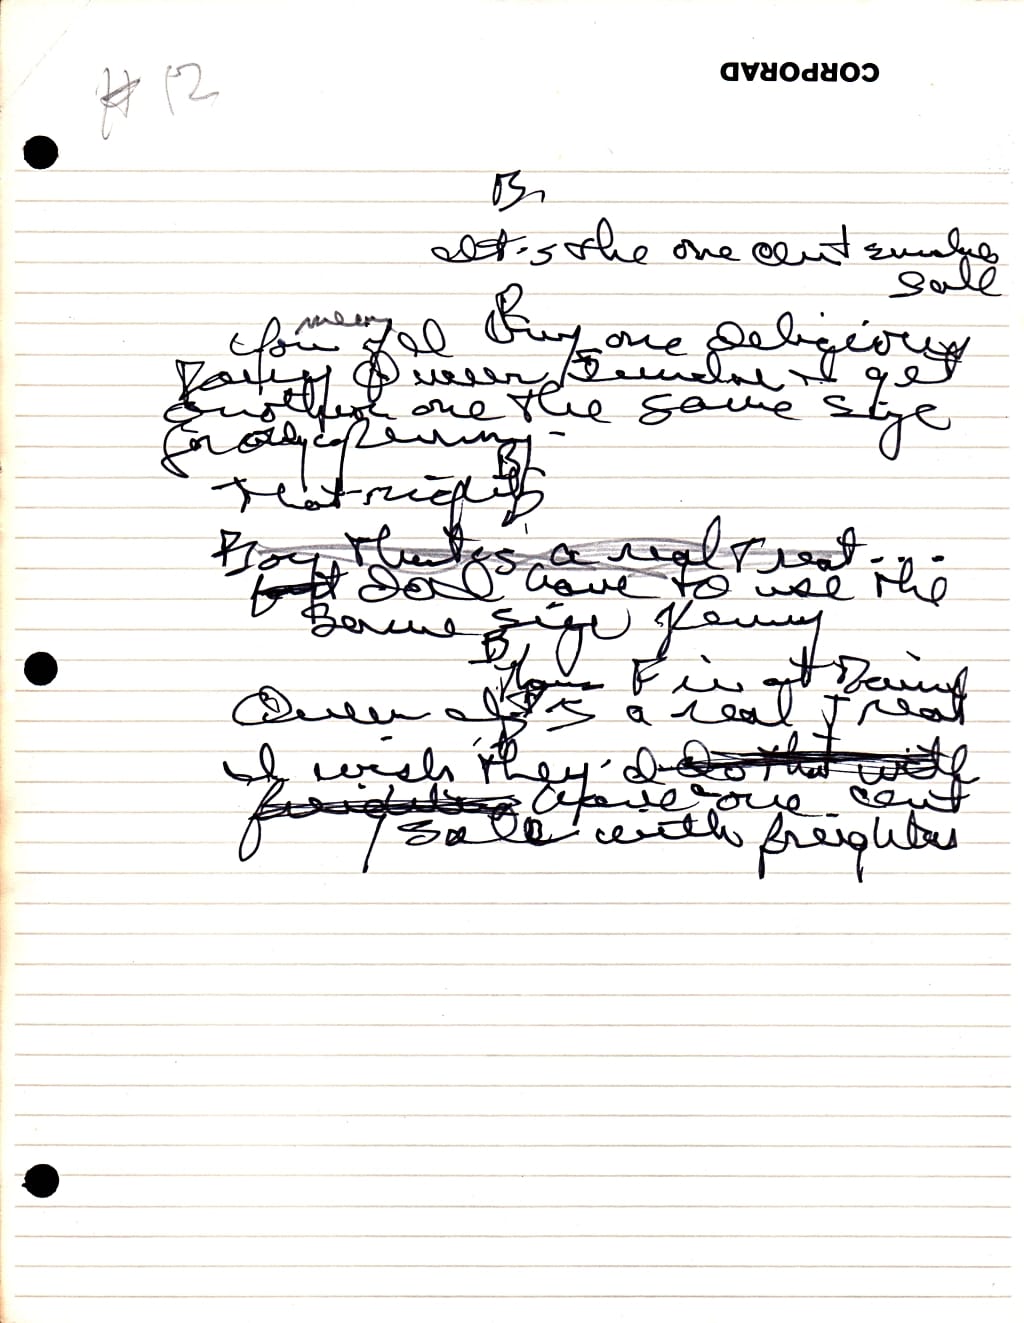 Pat McCormick's handwriting